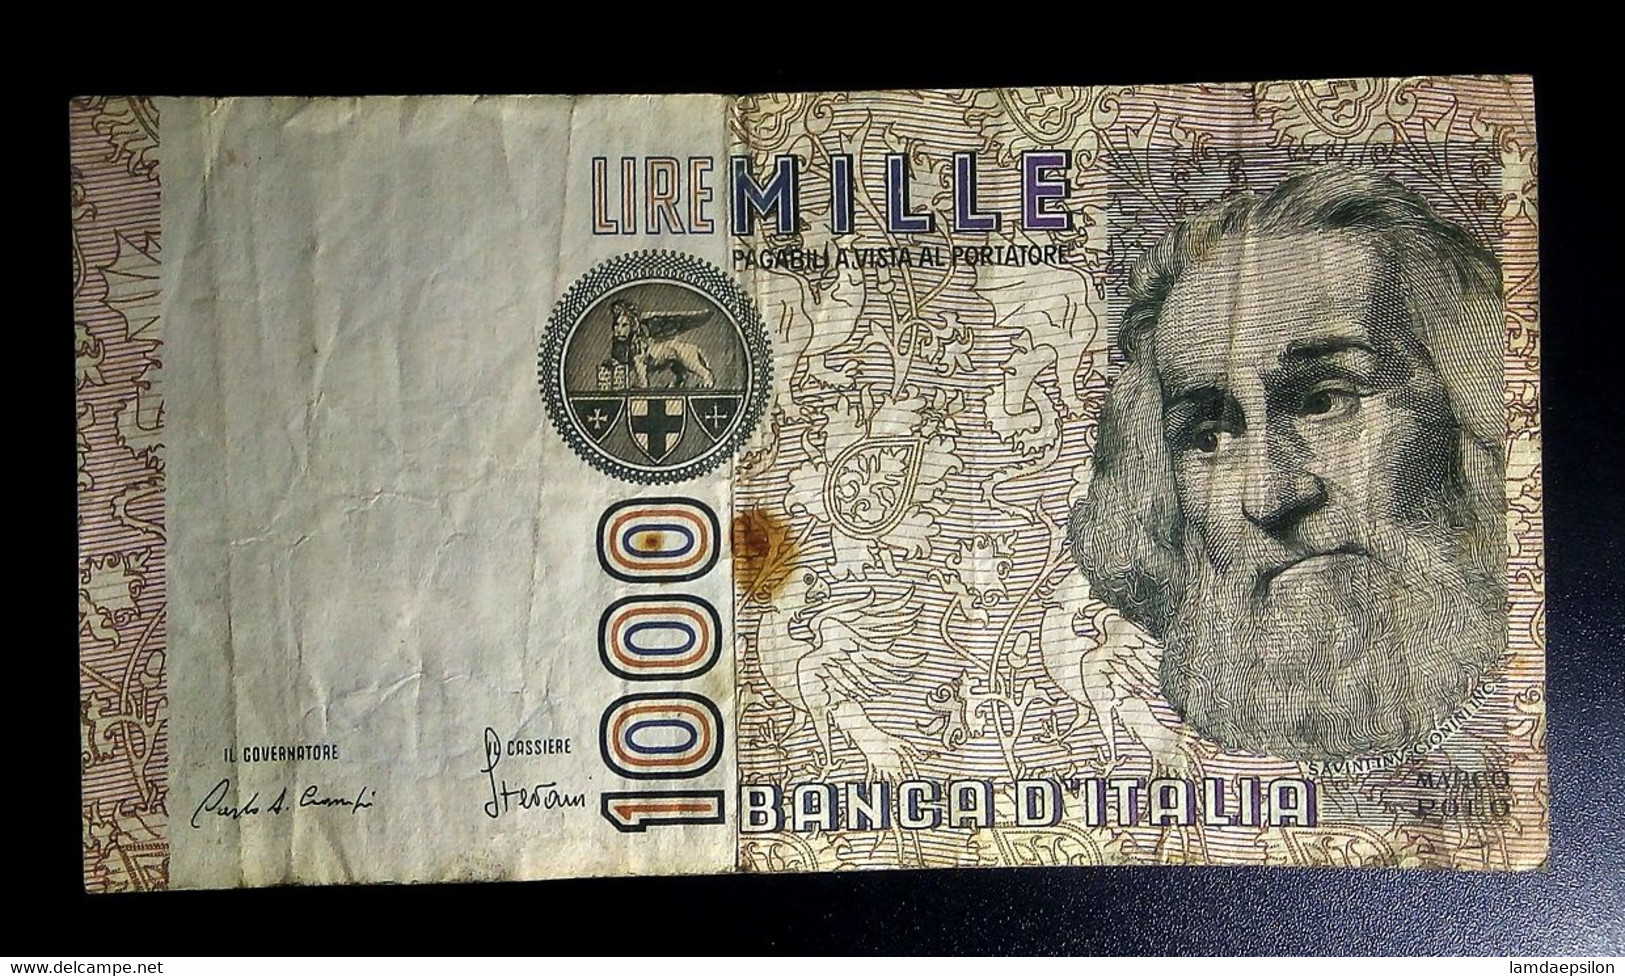 A7  ITALIE   BILLETS DU MONDE   ITALIA  BANKNOTES  1000  LIRE 1982 - [ 9] Sammlungen